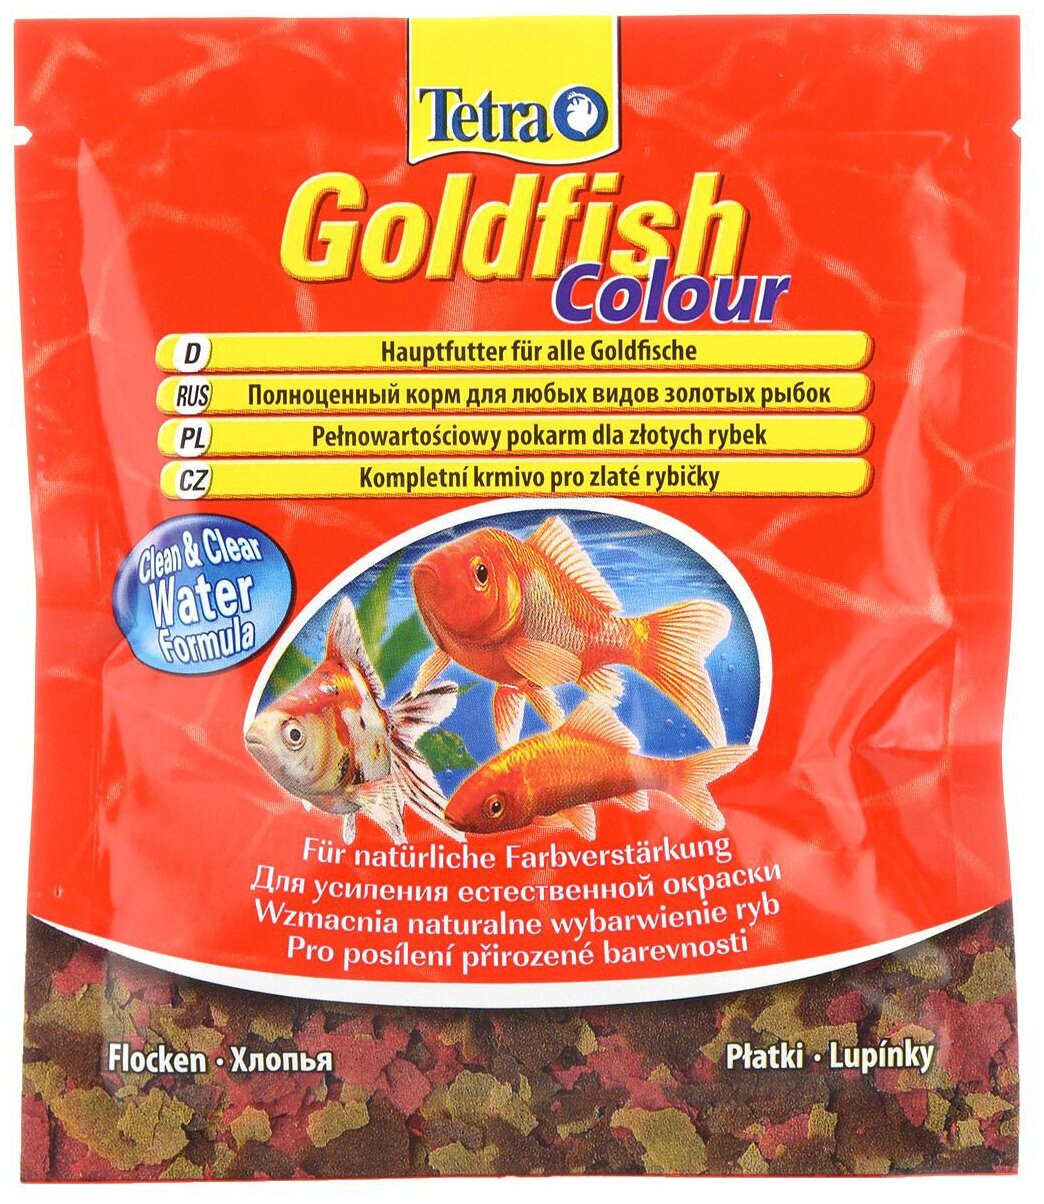 Tetra Goldfish Colour корм для всех золотых рыбок (хлопья) 12 г.